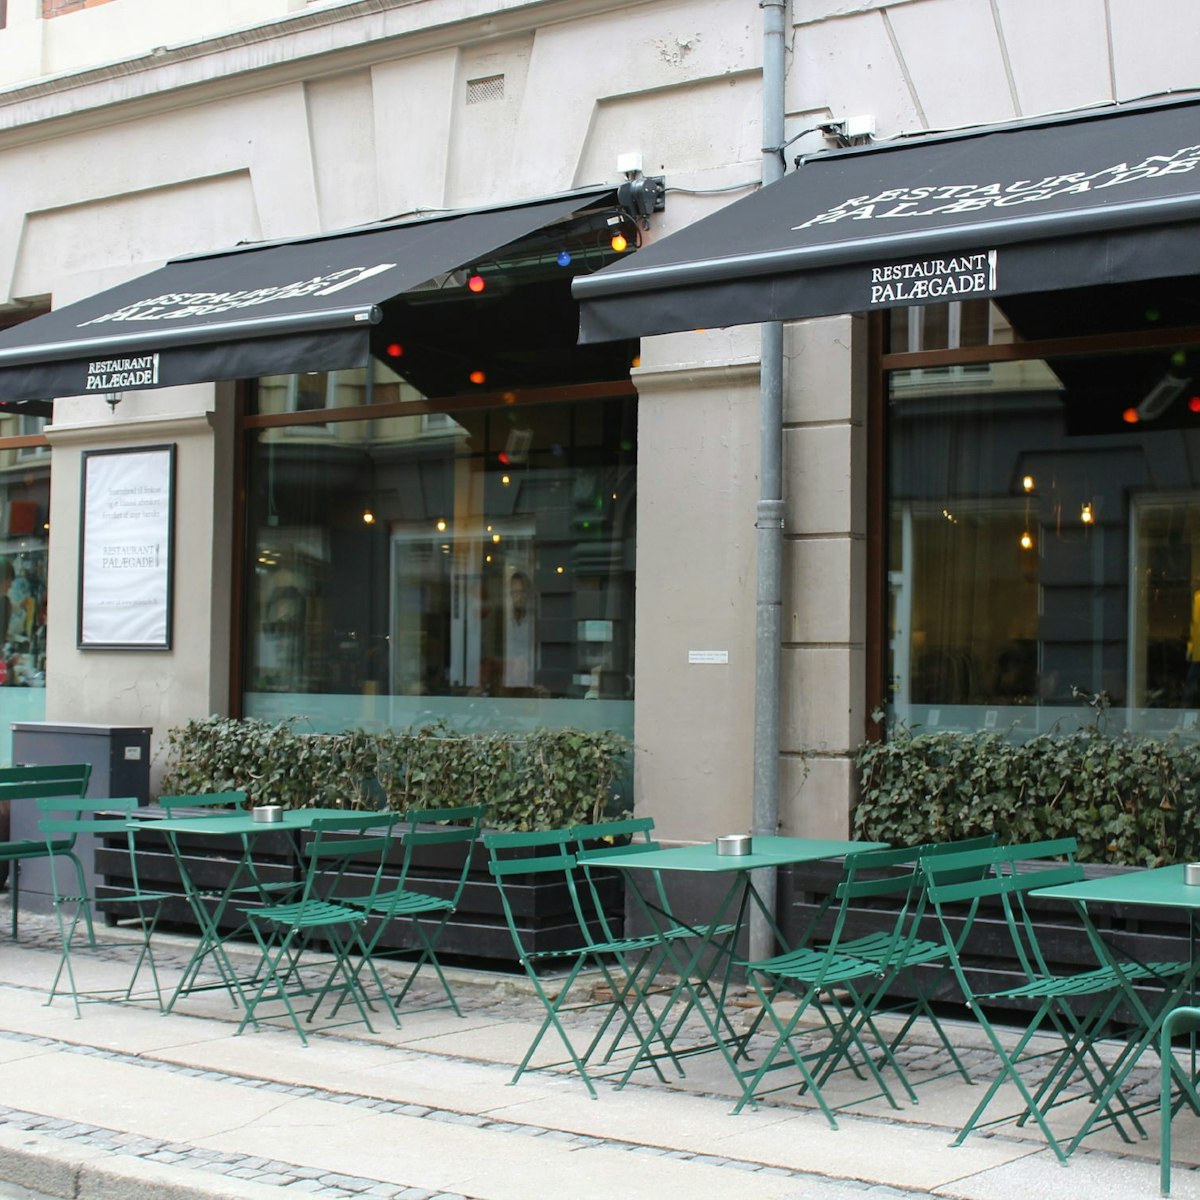 Restaurant Palægade, exterior wide shot